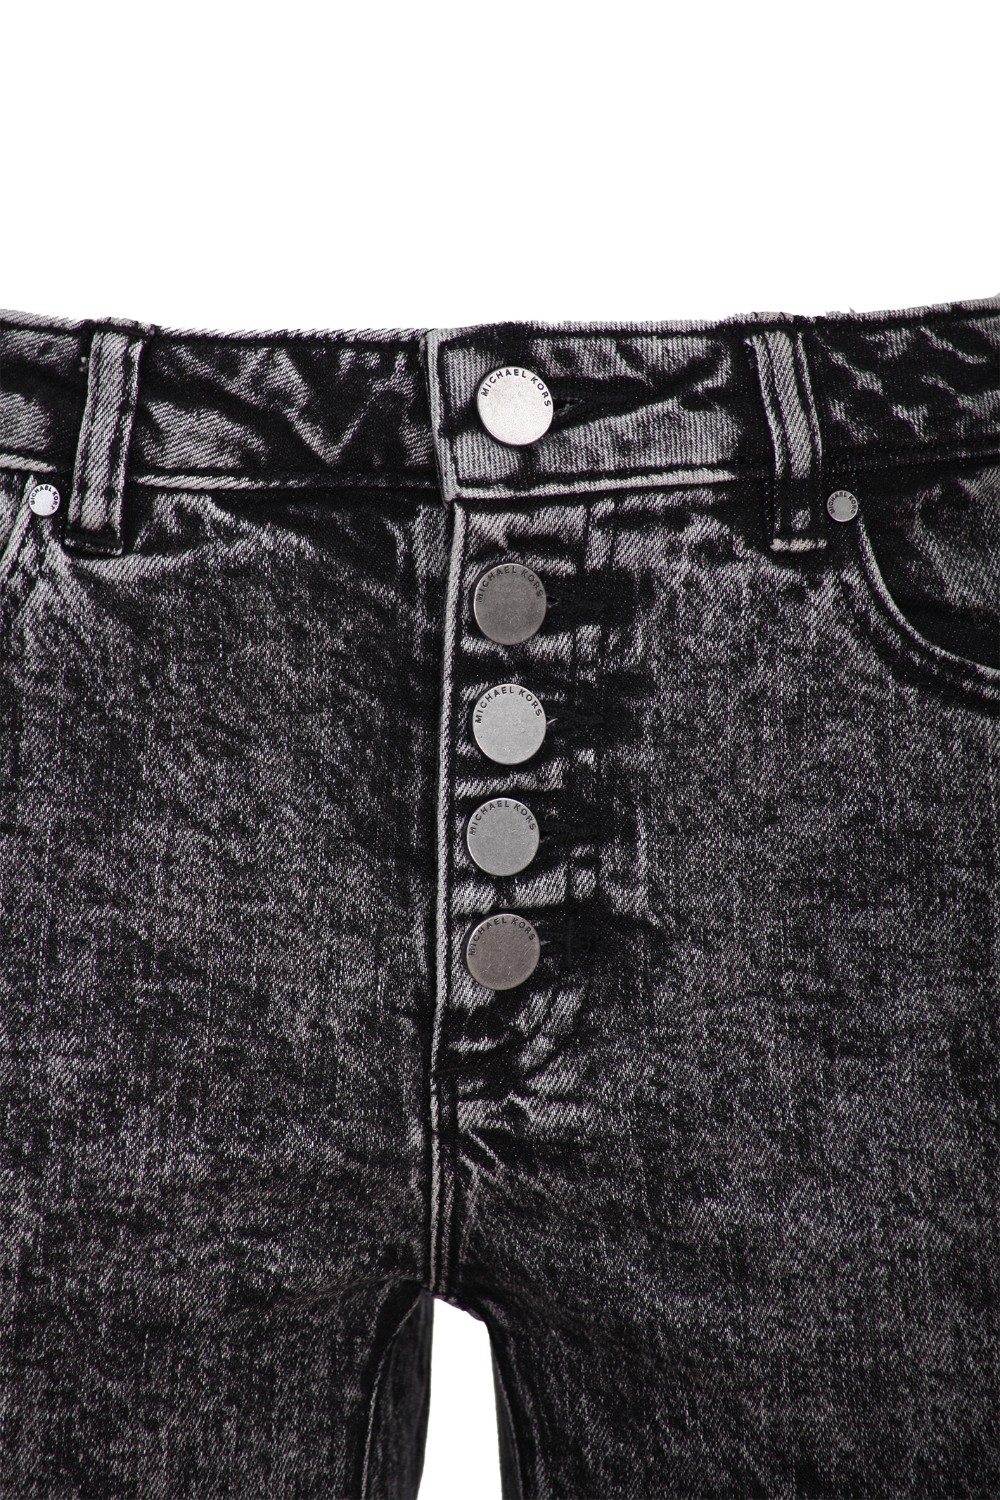 shop MICHAEL KORS Saldi Jeans: Michael Kors jeans in denim a lavaggio acido.
Vita alta.
Chiusura con bottoni.
Modello cinque tasche.
Vestibilità skinny.
Lunghezza alla caviglia.
Composizione: 99% cotone 1% elastan.. MH99CSKEDX-001 number 348690